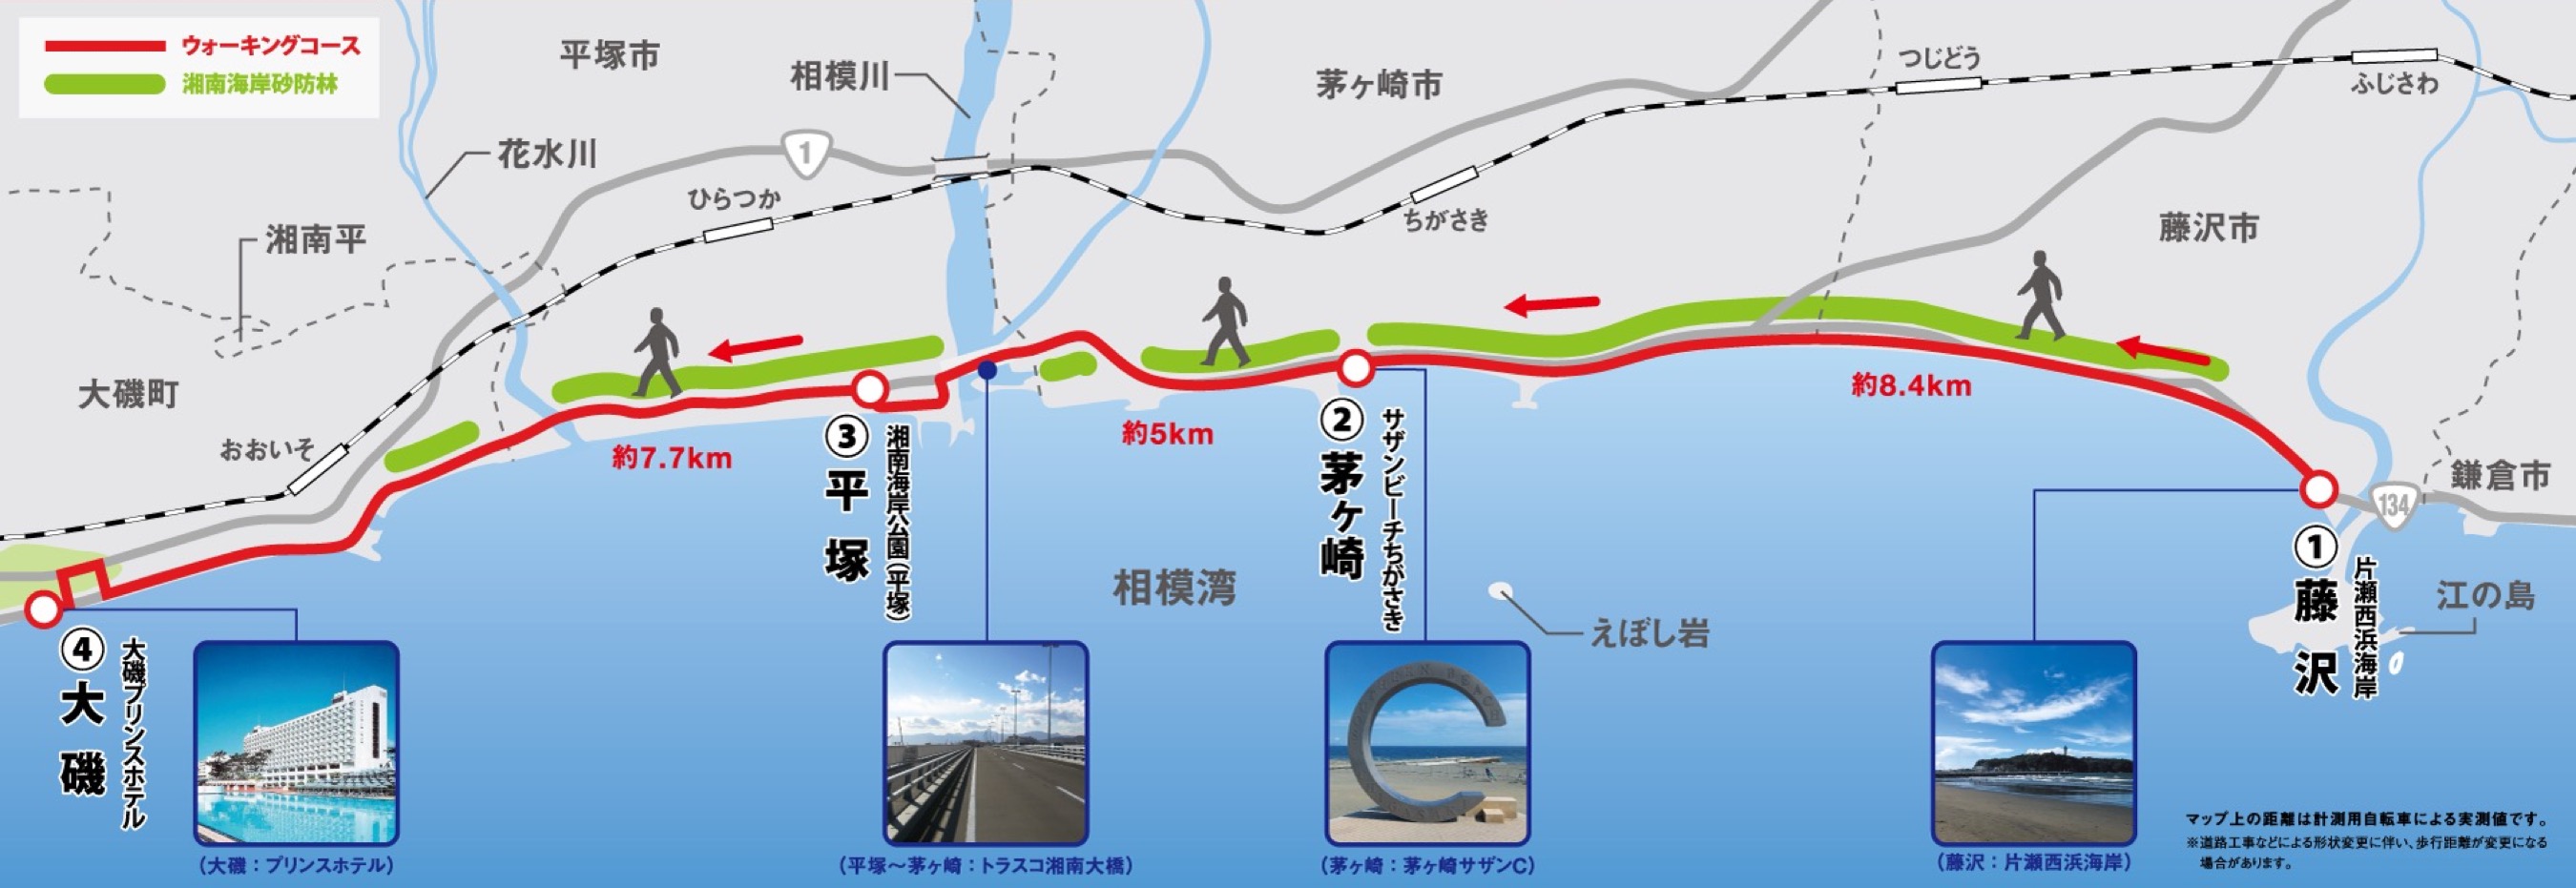 湘南マラソンコース図